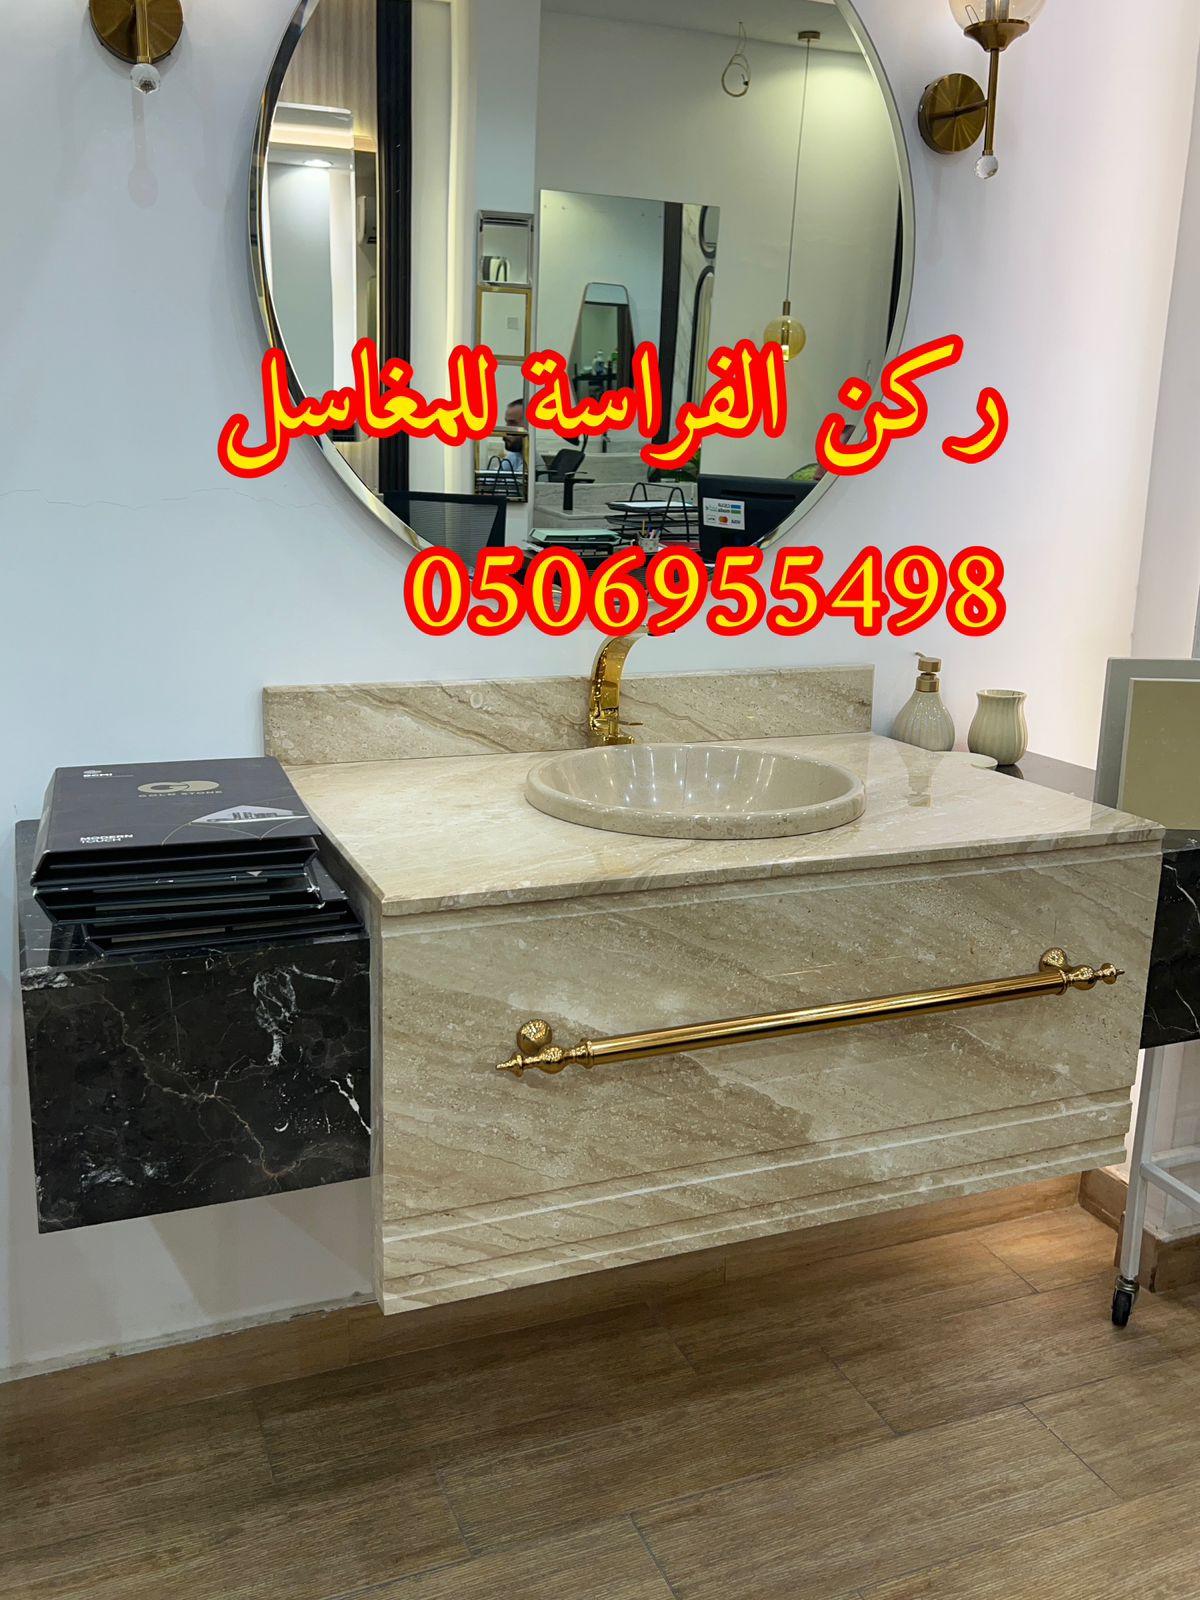 الرياض - ديكورات مغاسل حمامات رخام في الرياض,0506955498 810336614